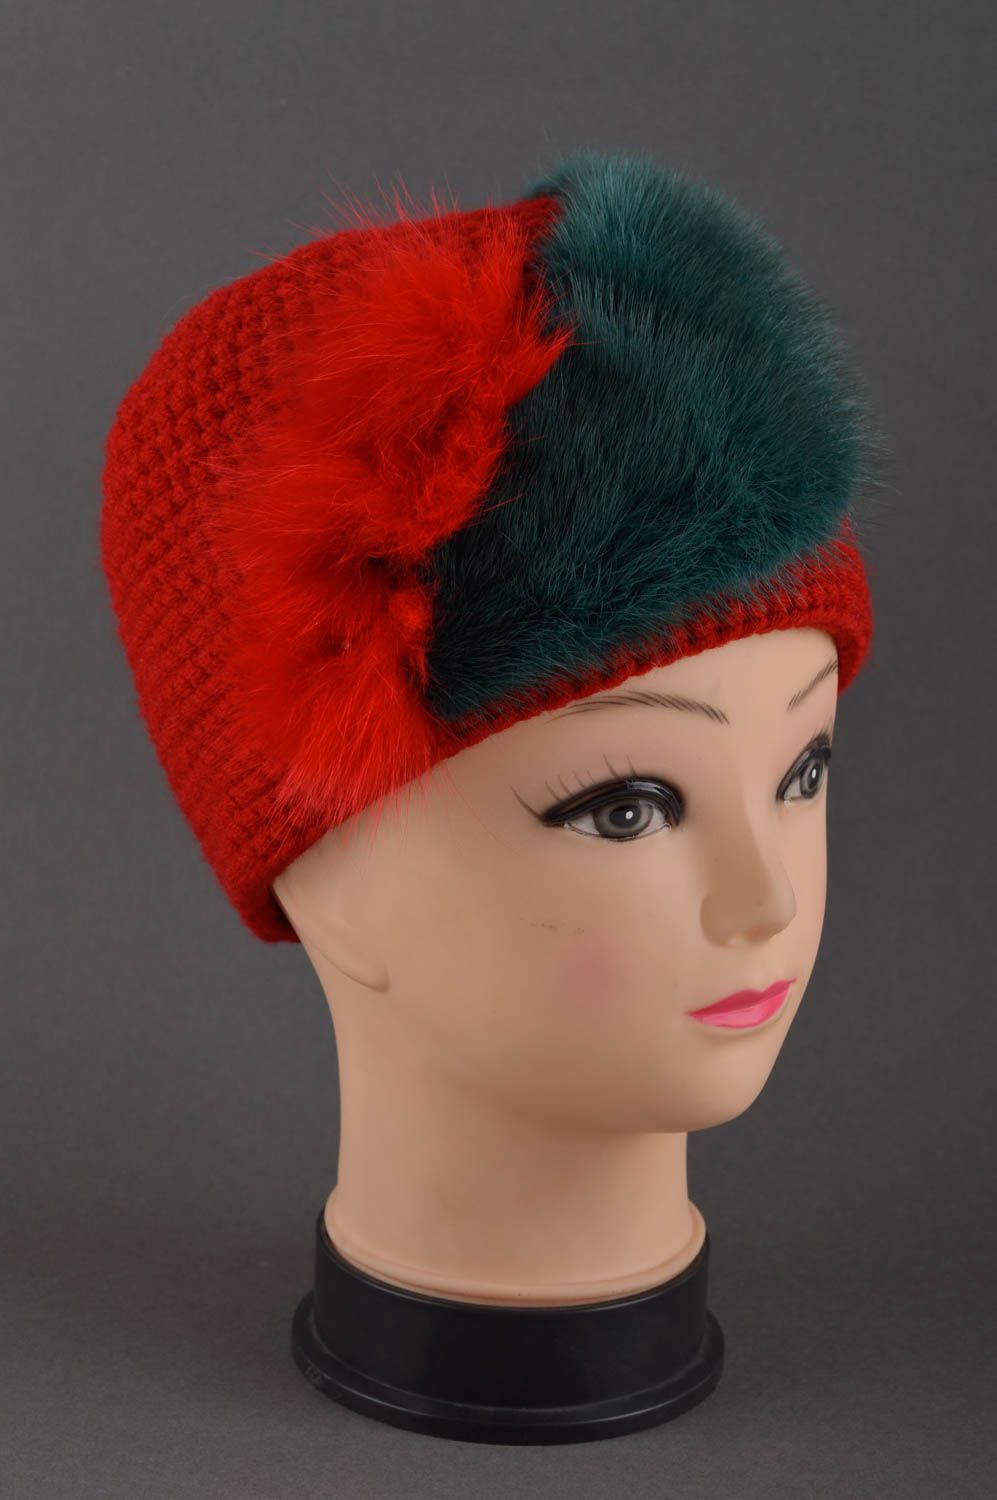 Handmade hat designer warm hat children hat woolen headwear gift ideas photo 1